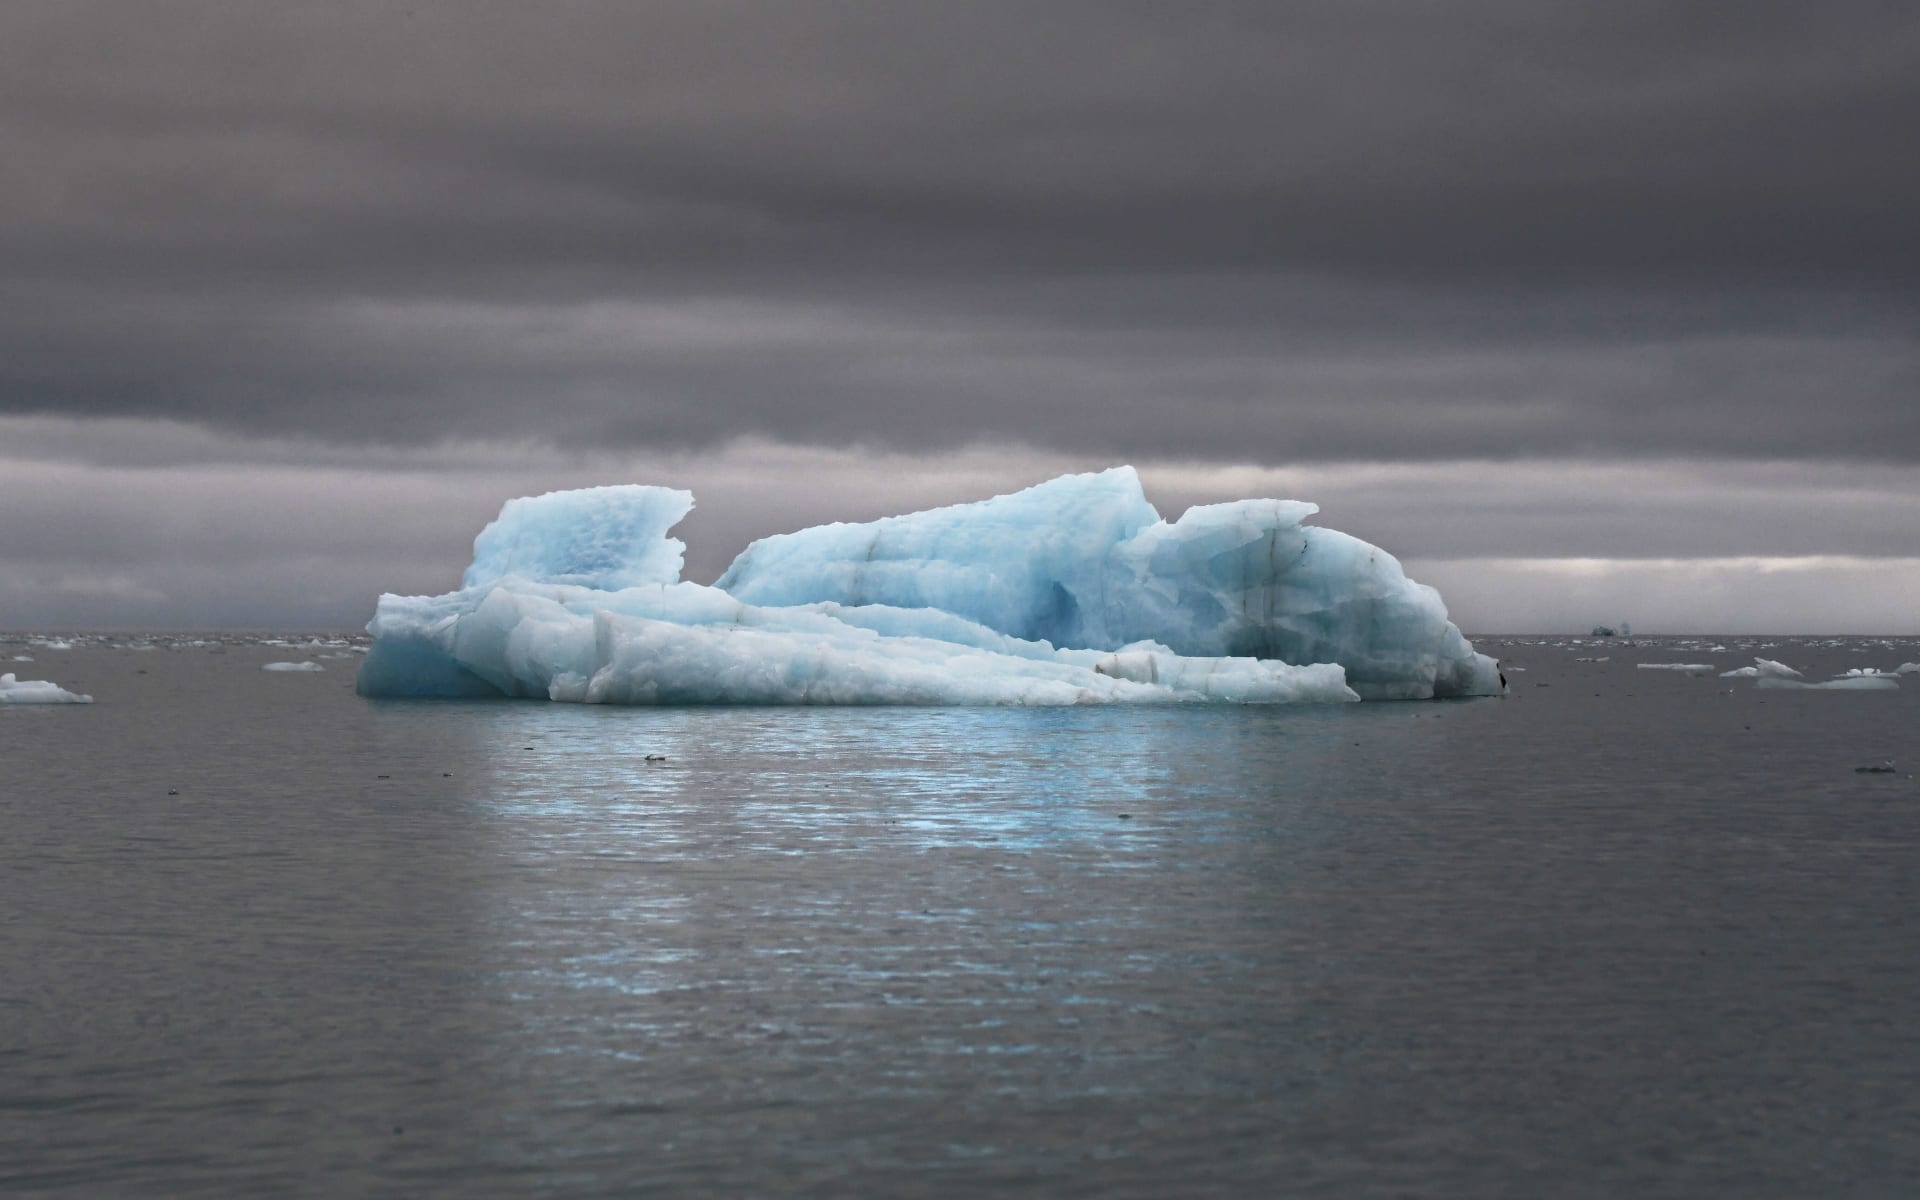 Ortelius__Iceberg_CCGeert_Kroes_oggkri